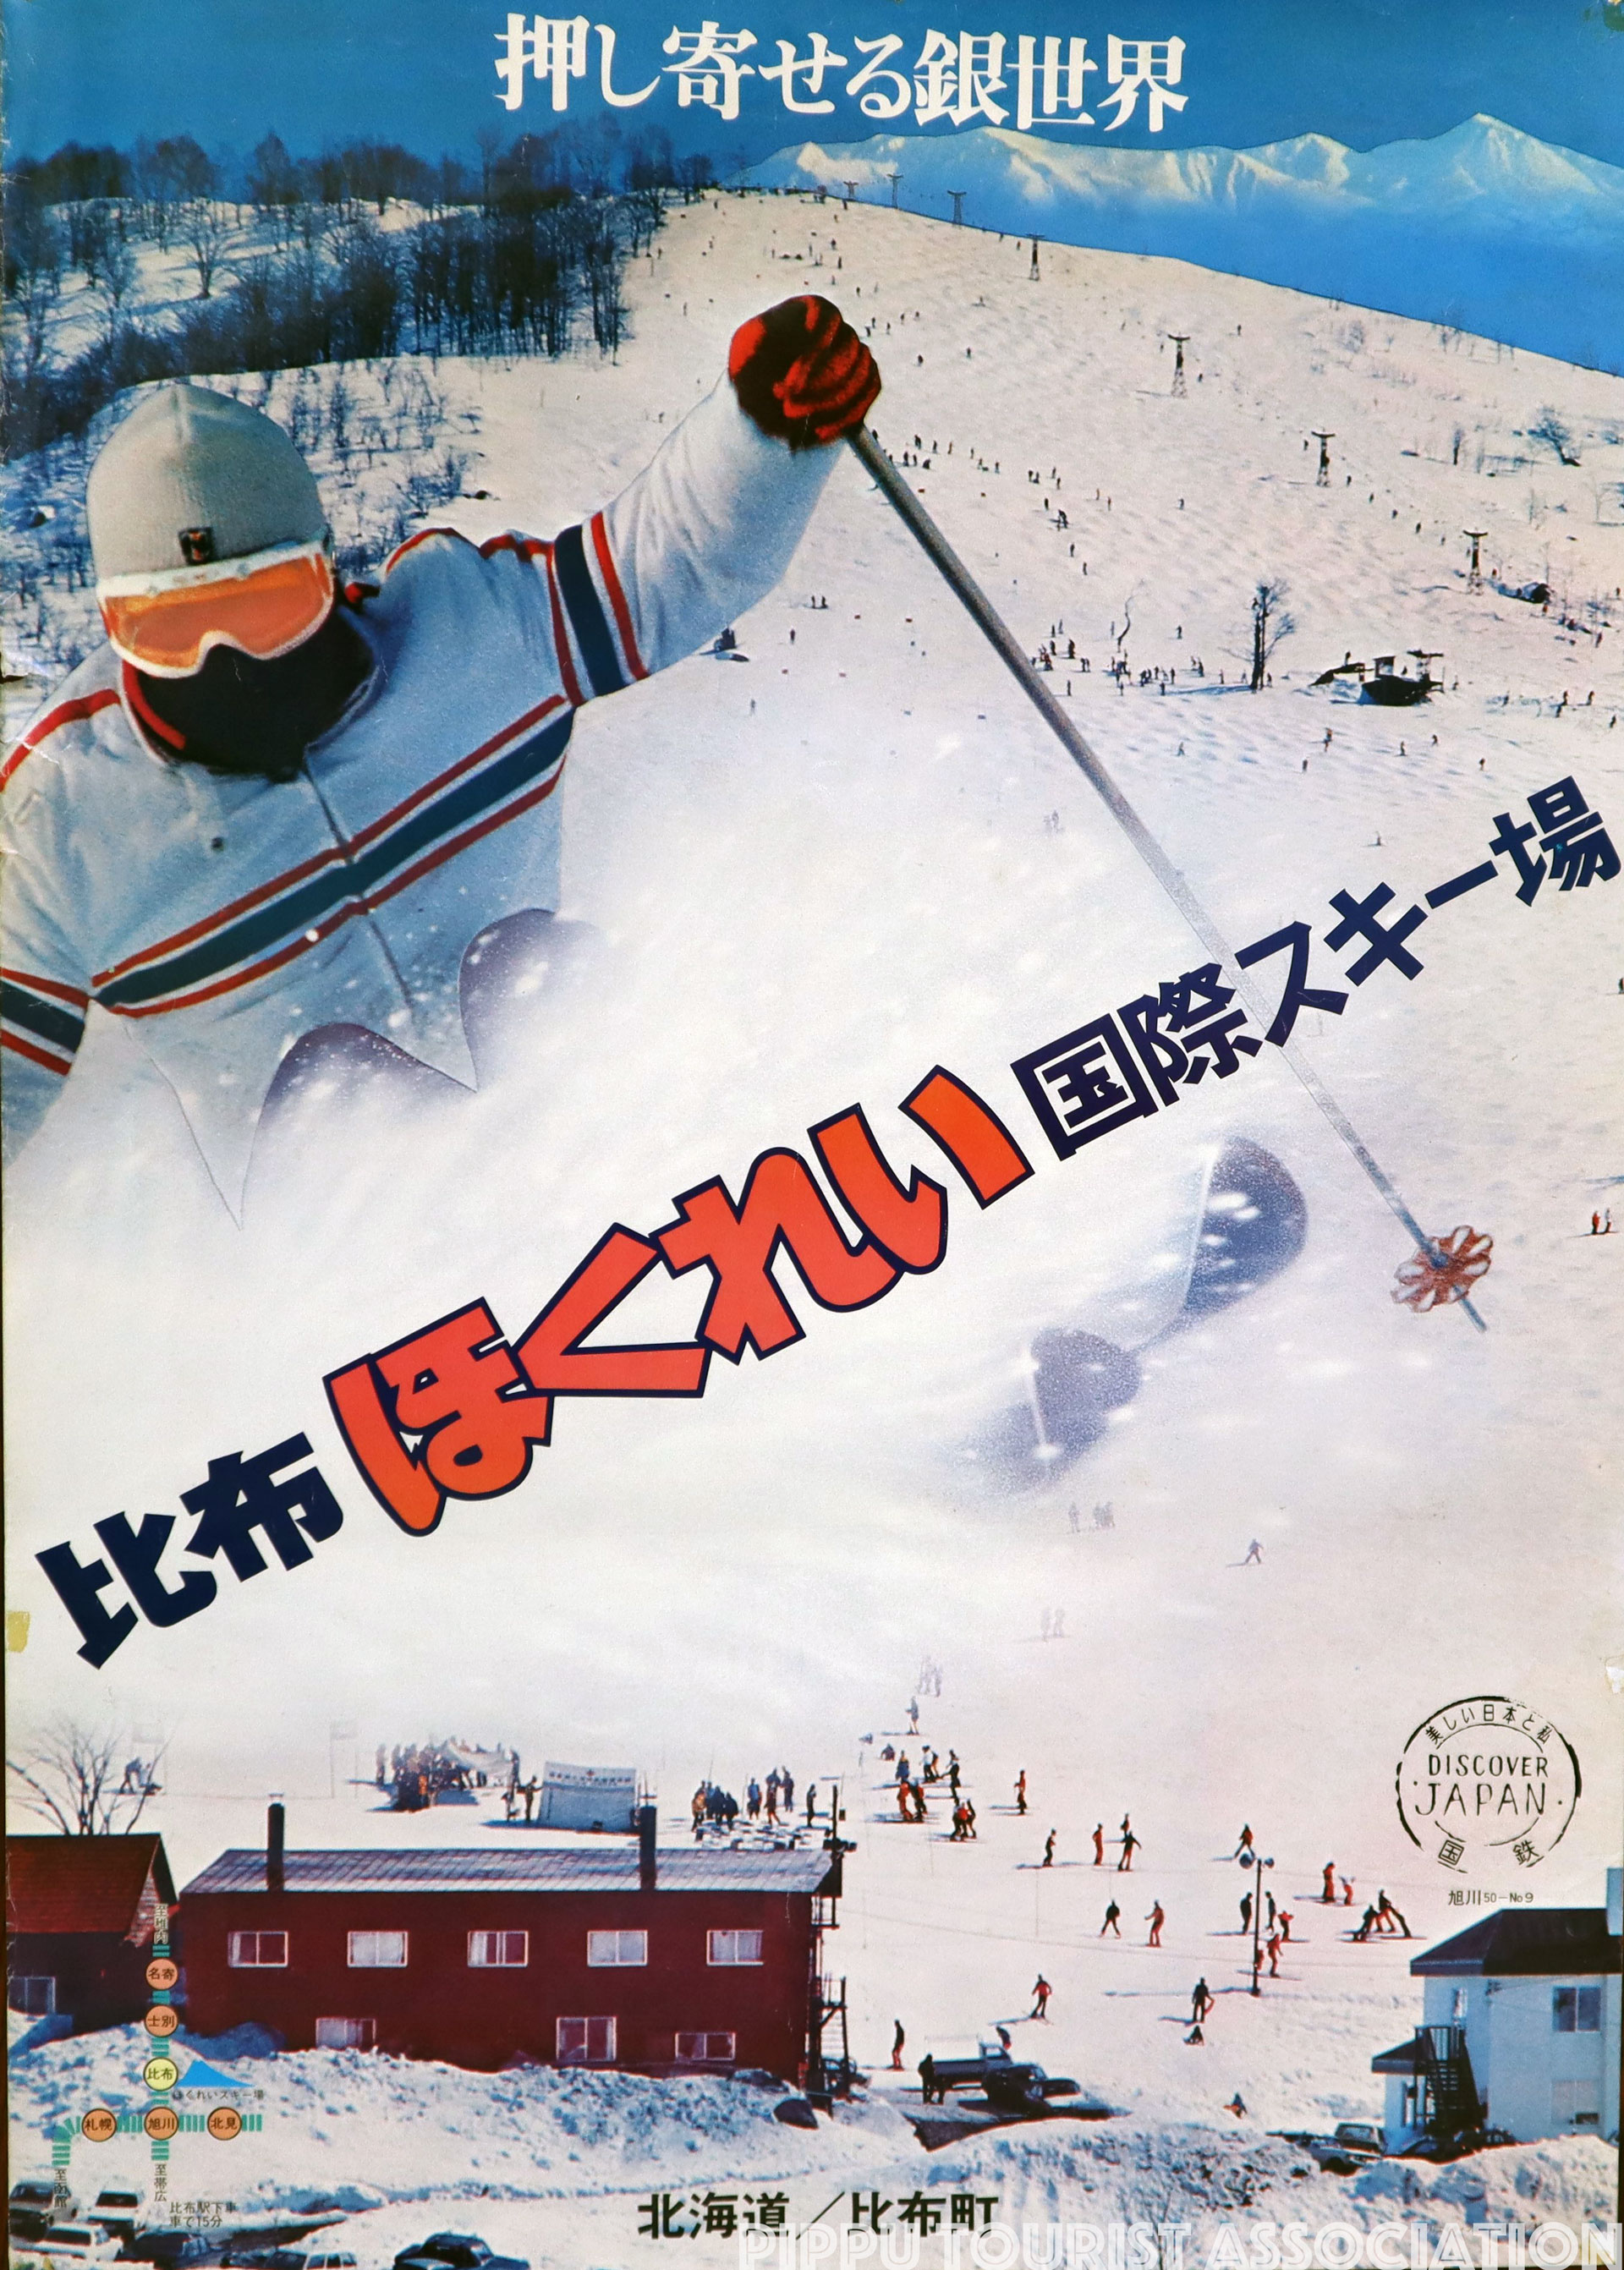 昭和50年比布ほくれい国際スキー場